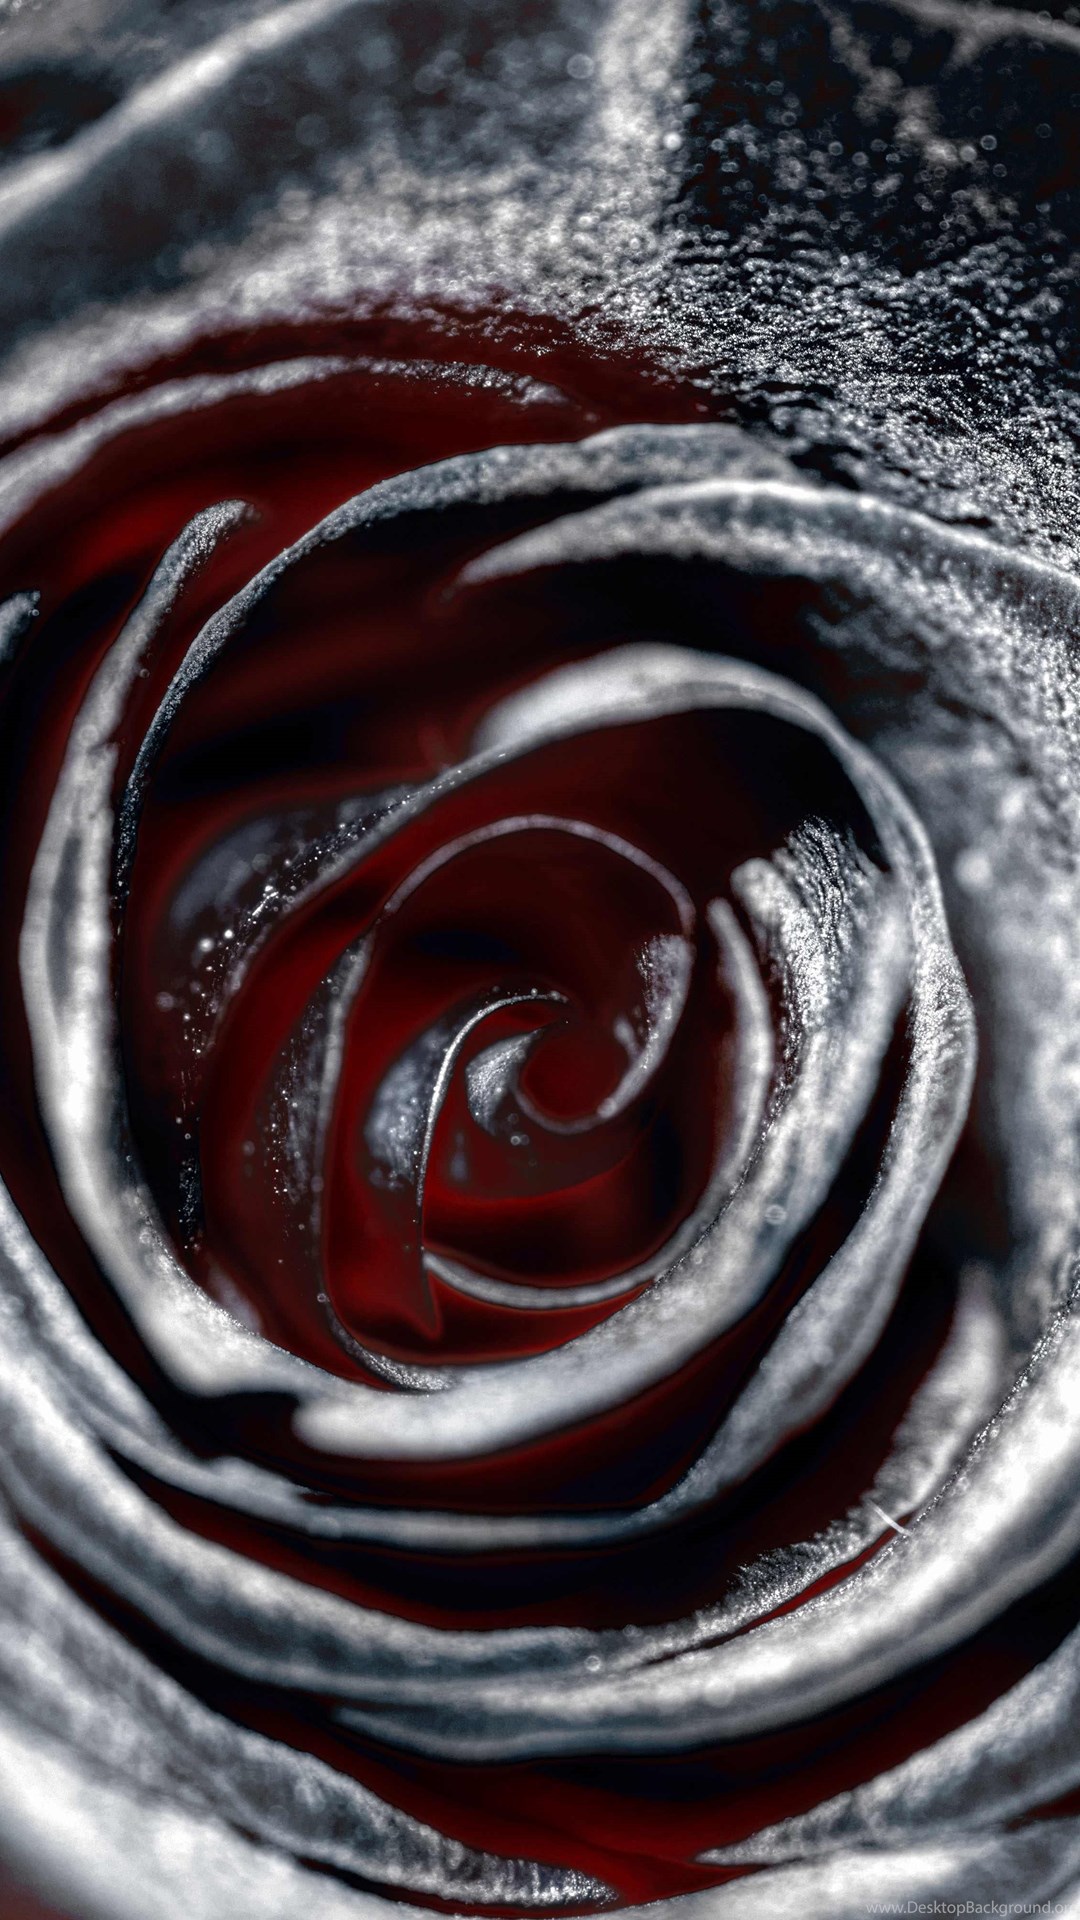  Black  Rose  Wallpapers  Black  Roses  HD  Wallpaper  Images 